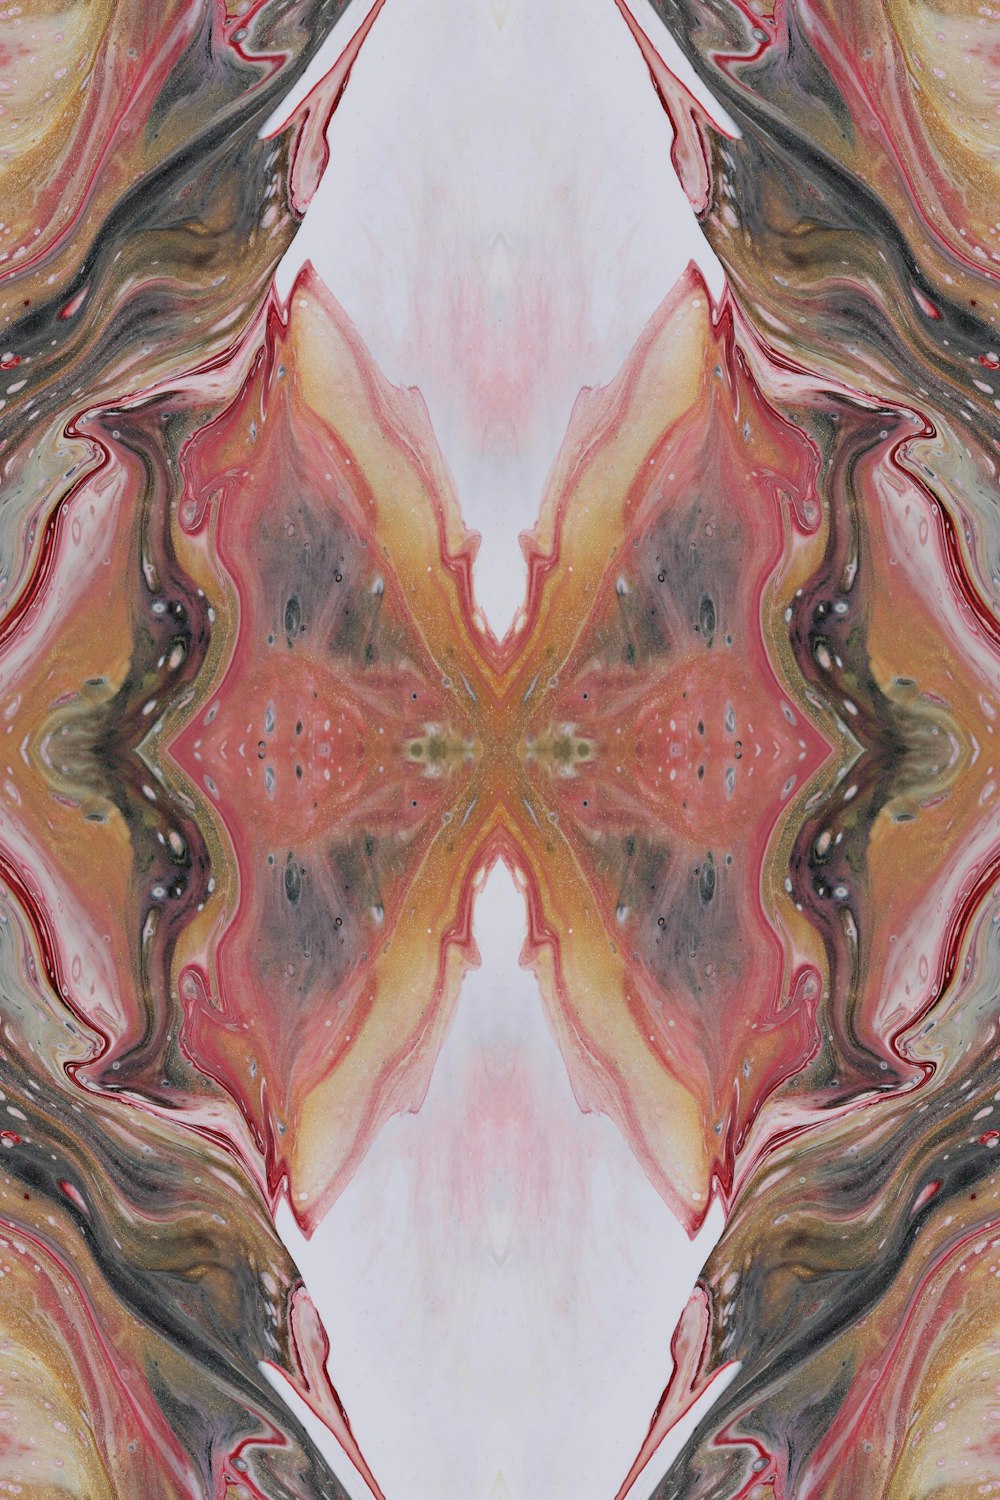 Une image abstraite d’une fleur avec un centre rouge